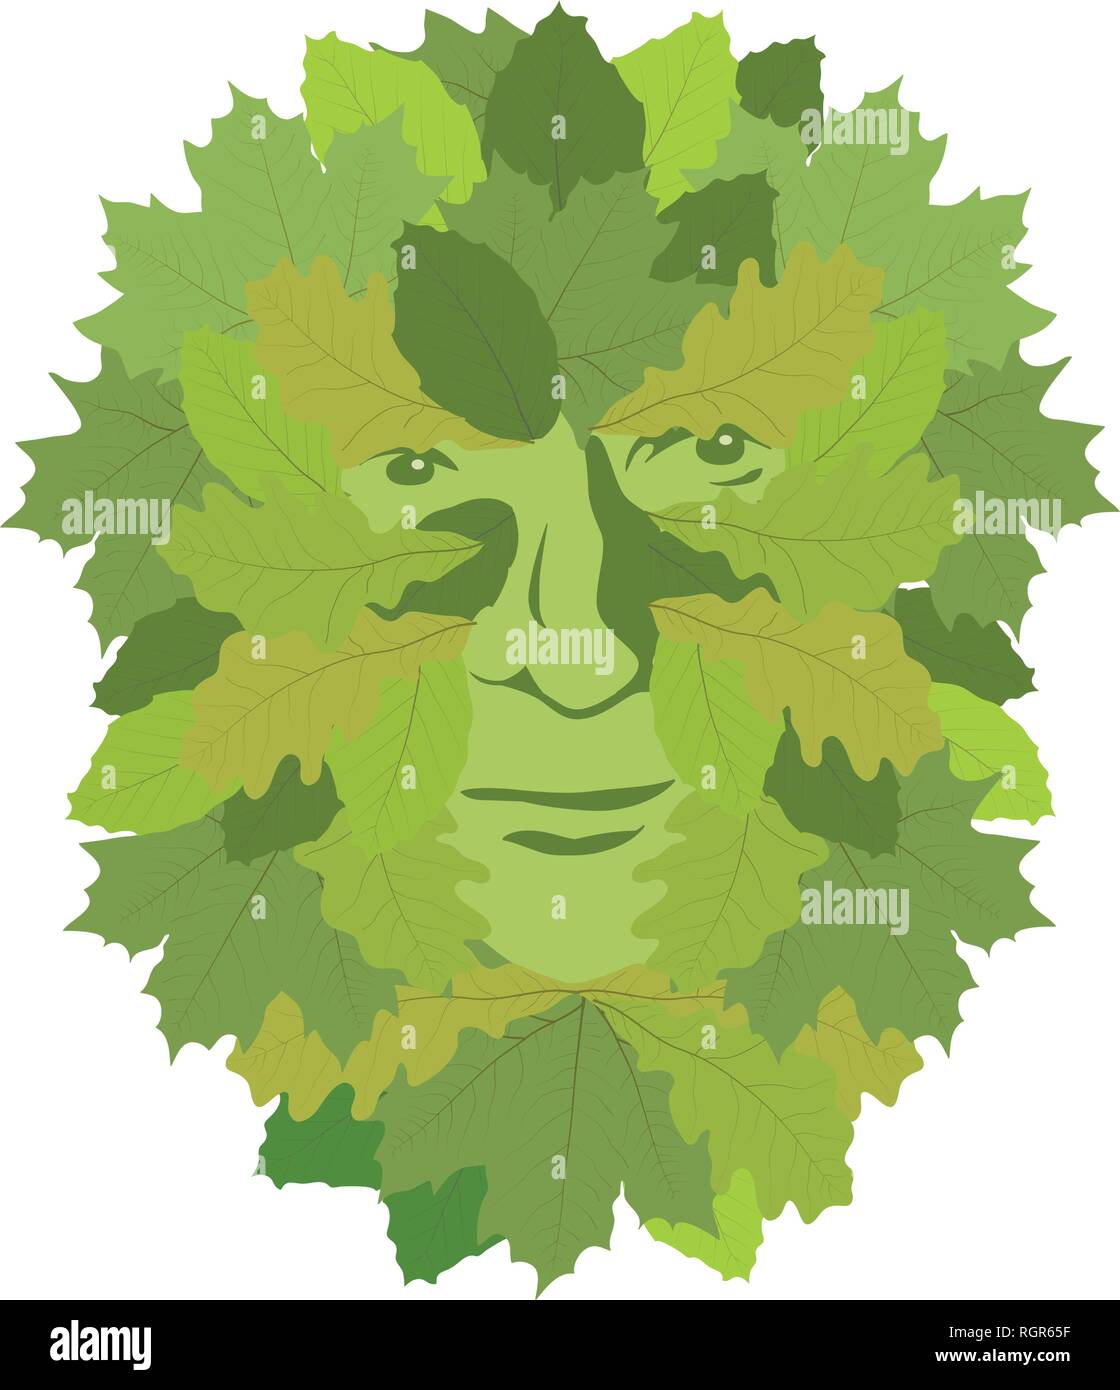 Simbolo celtico, green man, illustrazione vettoriale Illustrazione Vettoriale